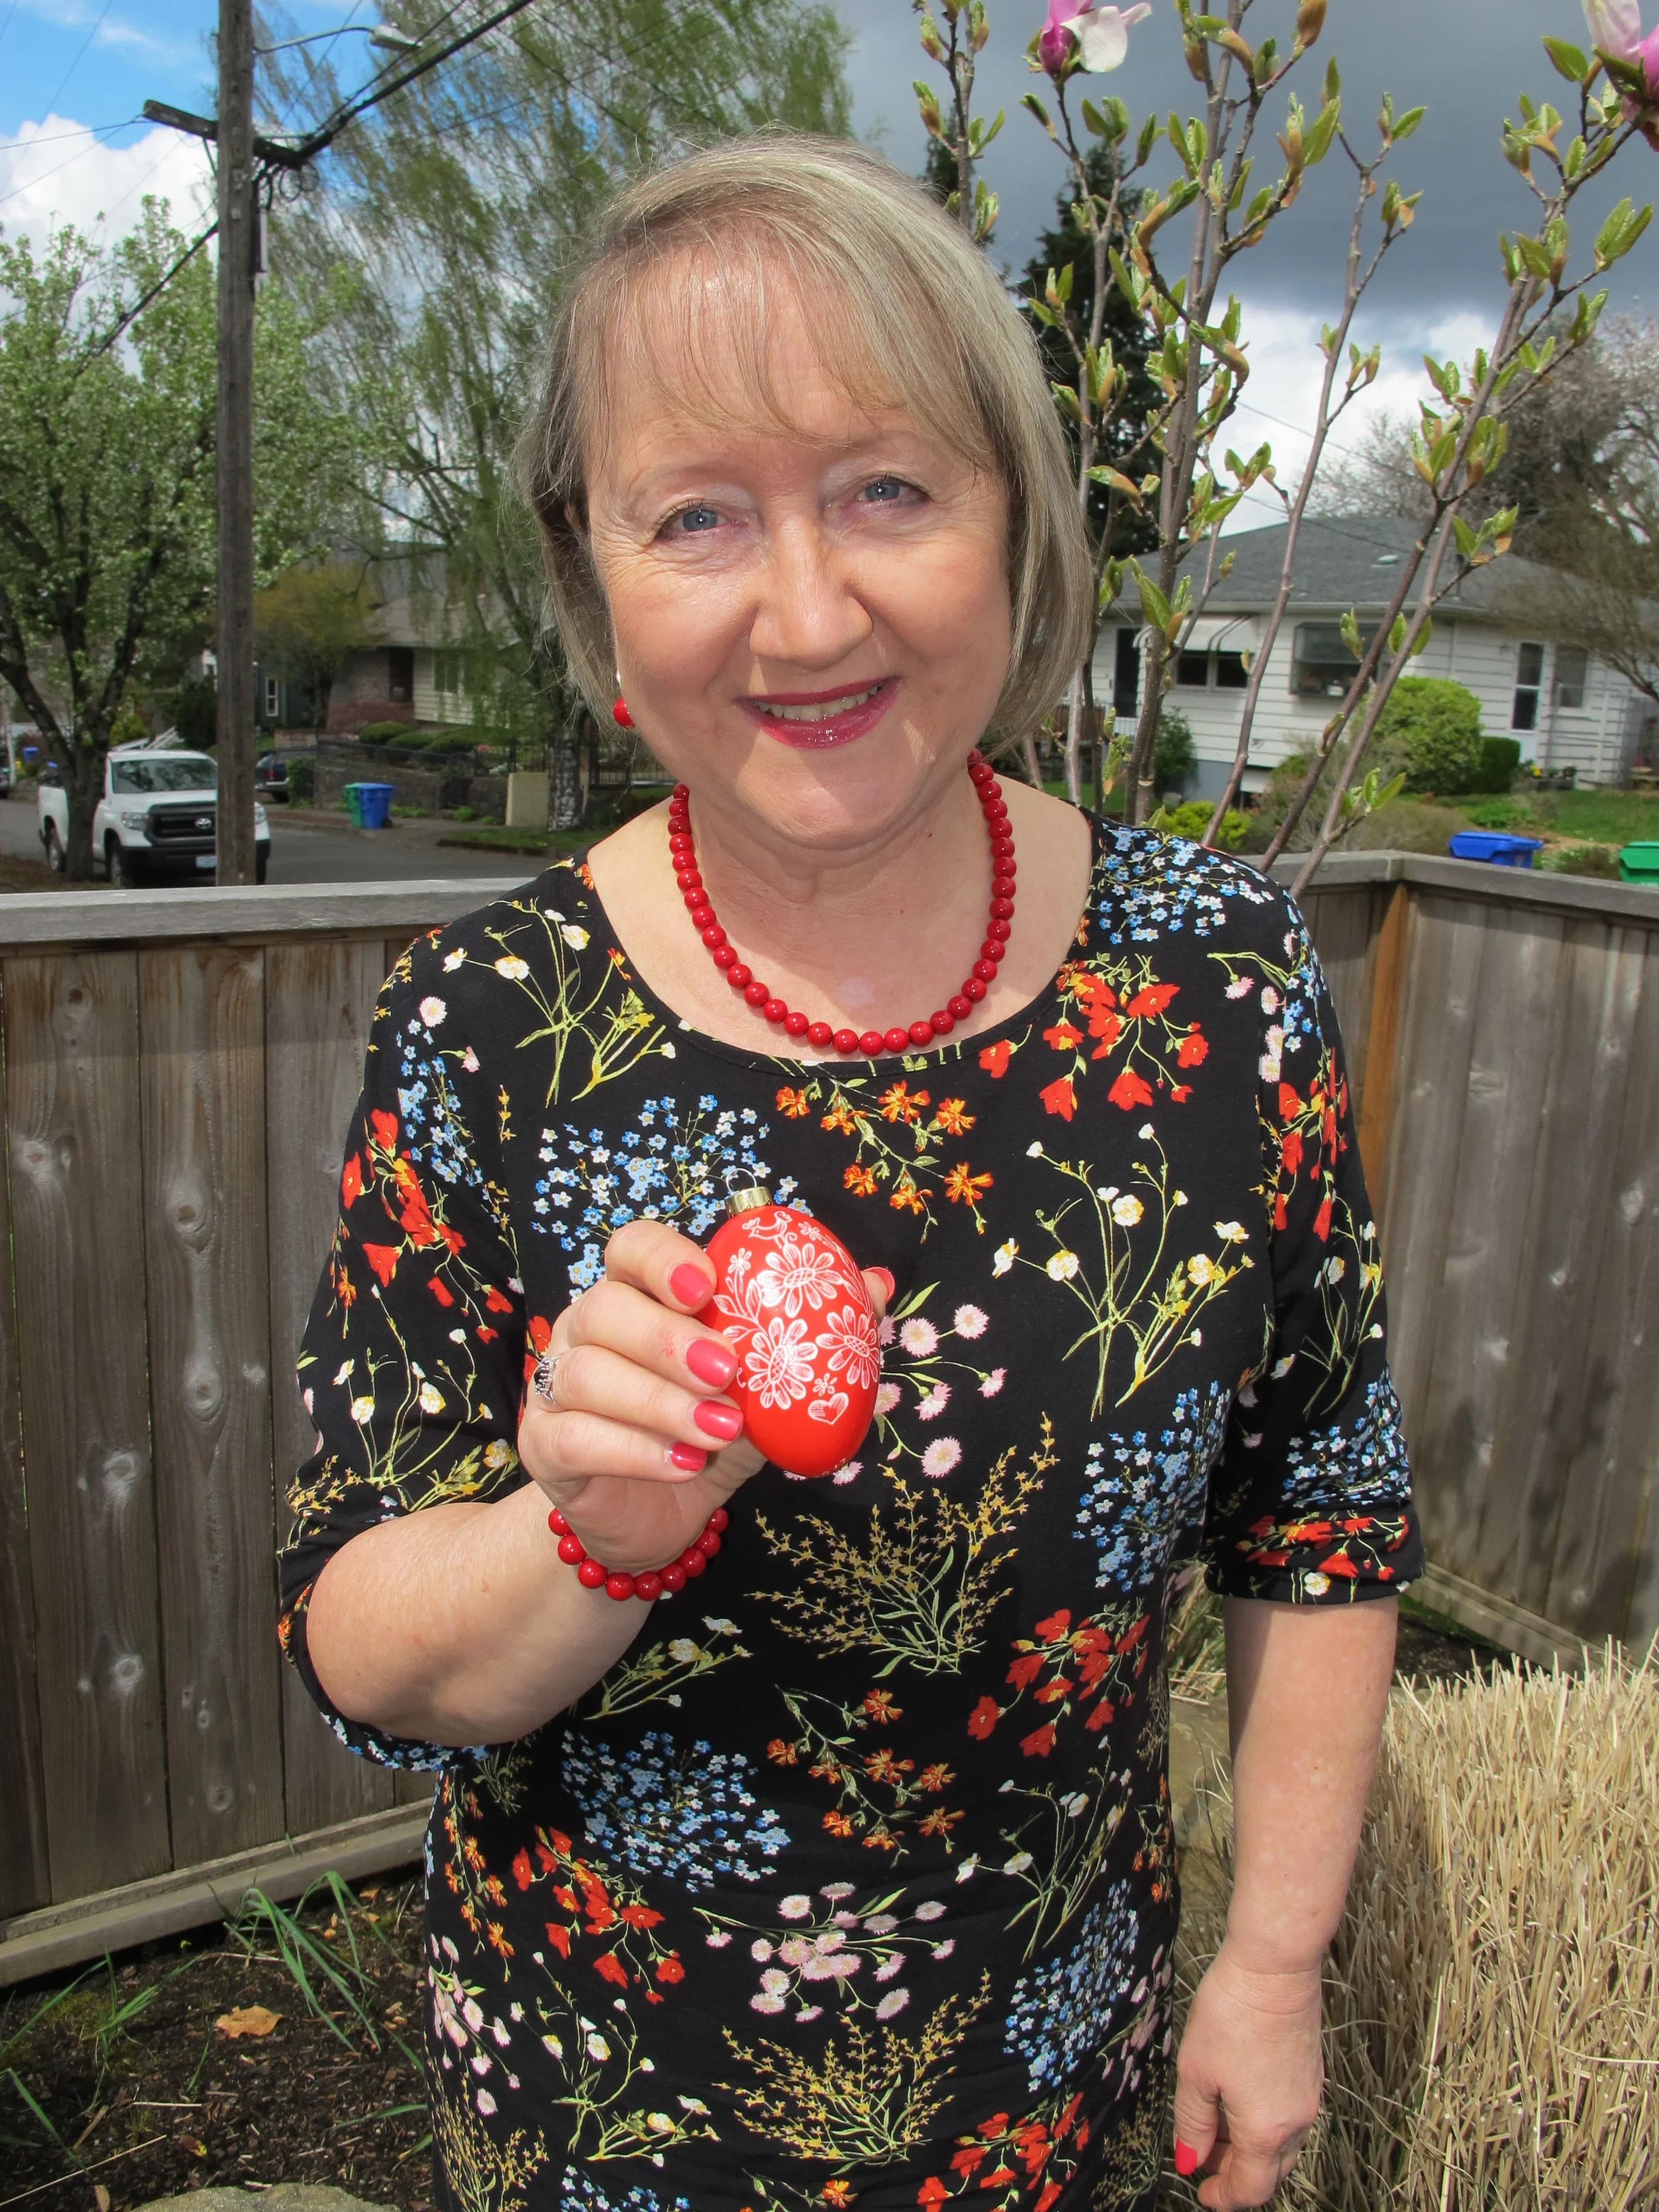 Daneila Mahoney holding a decorated egg